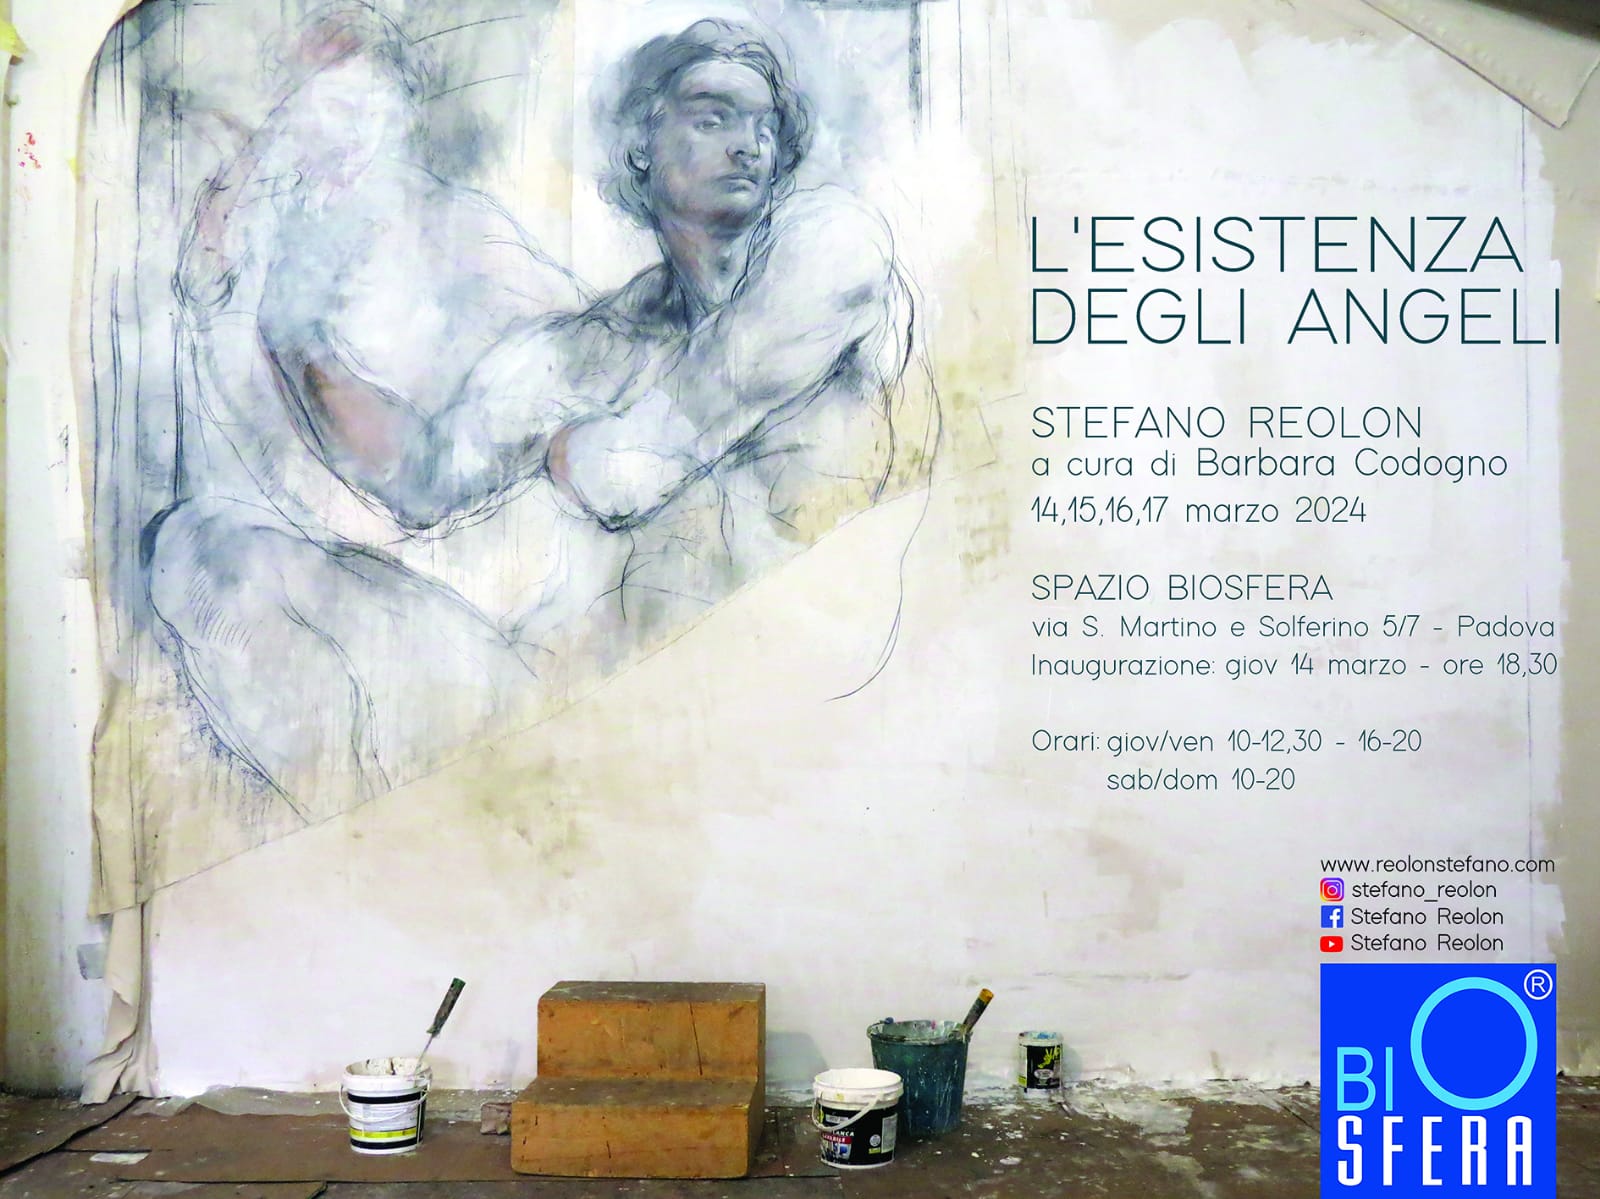 L'esistenza degli angeli, p.ersonale di Stefano Reolon. L'inaugurazione sabato 14 marzo alle 18:30 allo Spazio Biosfera di Padova.